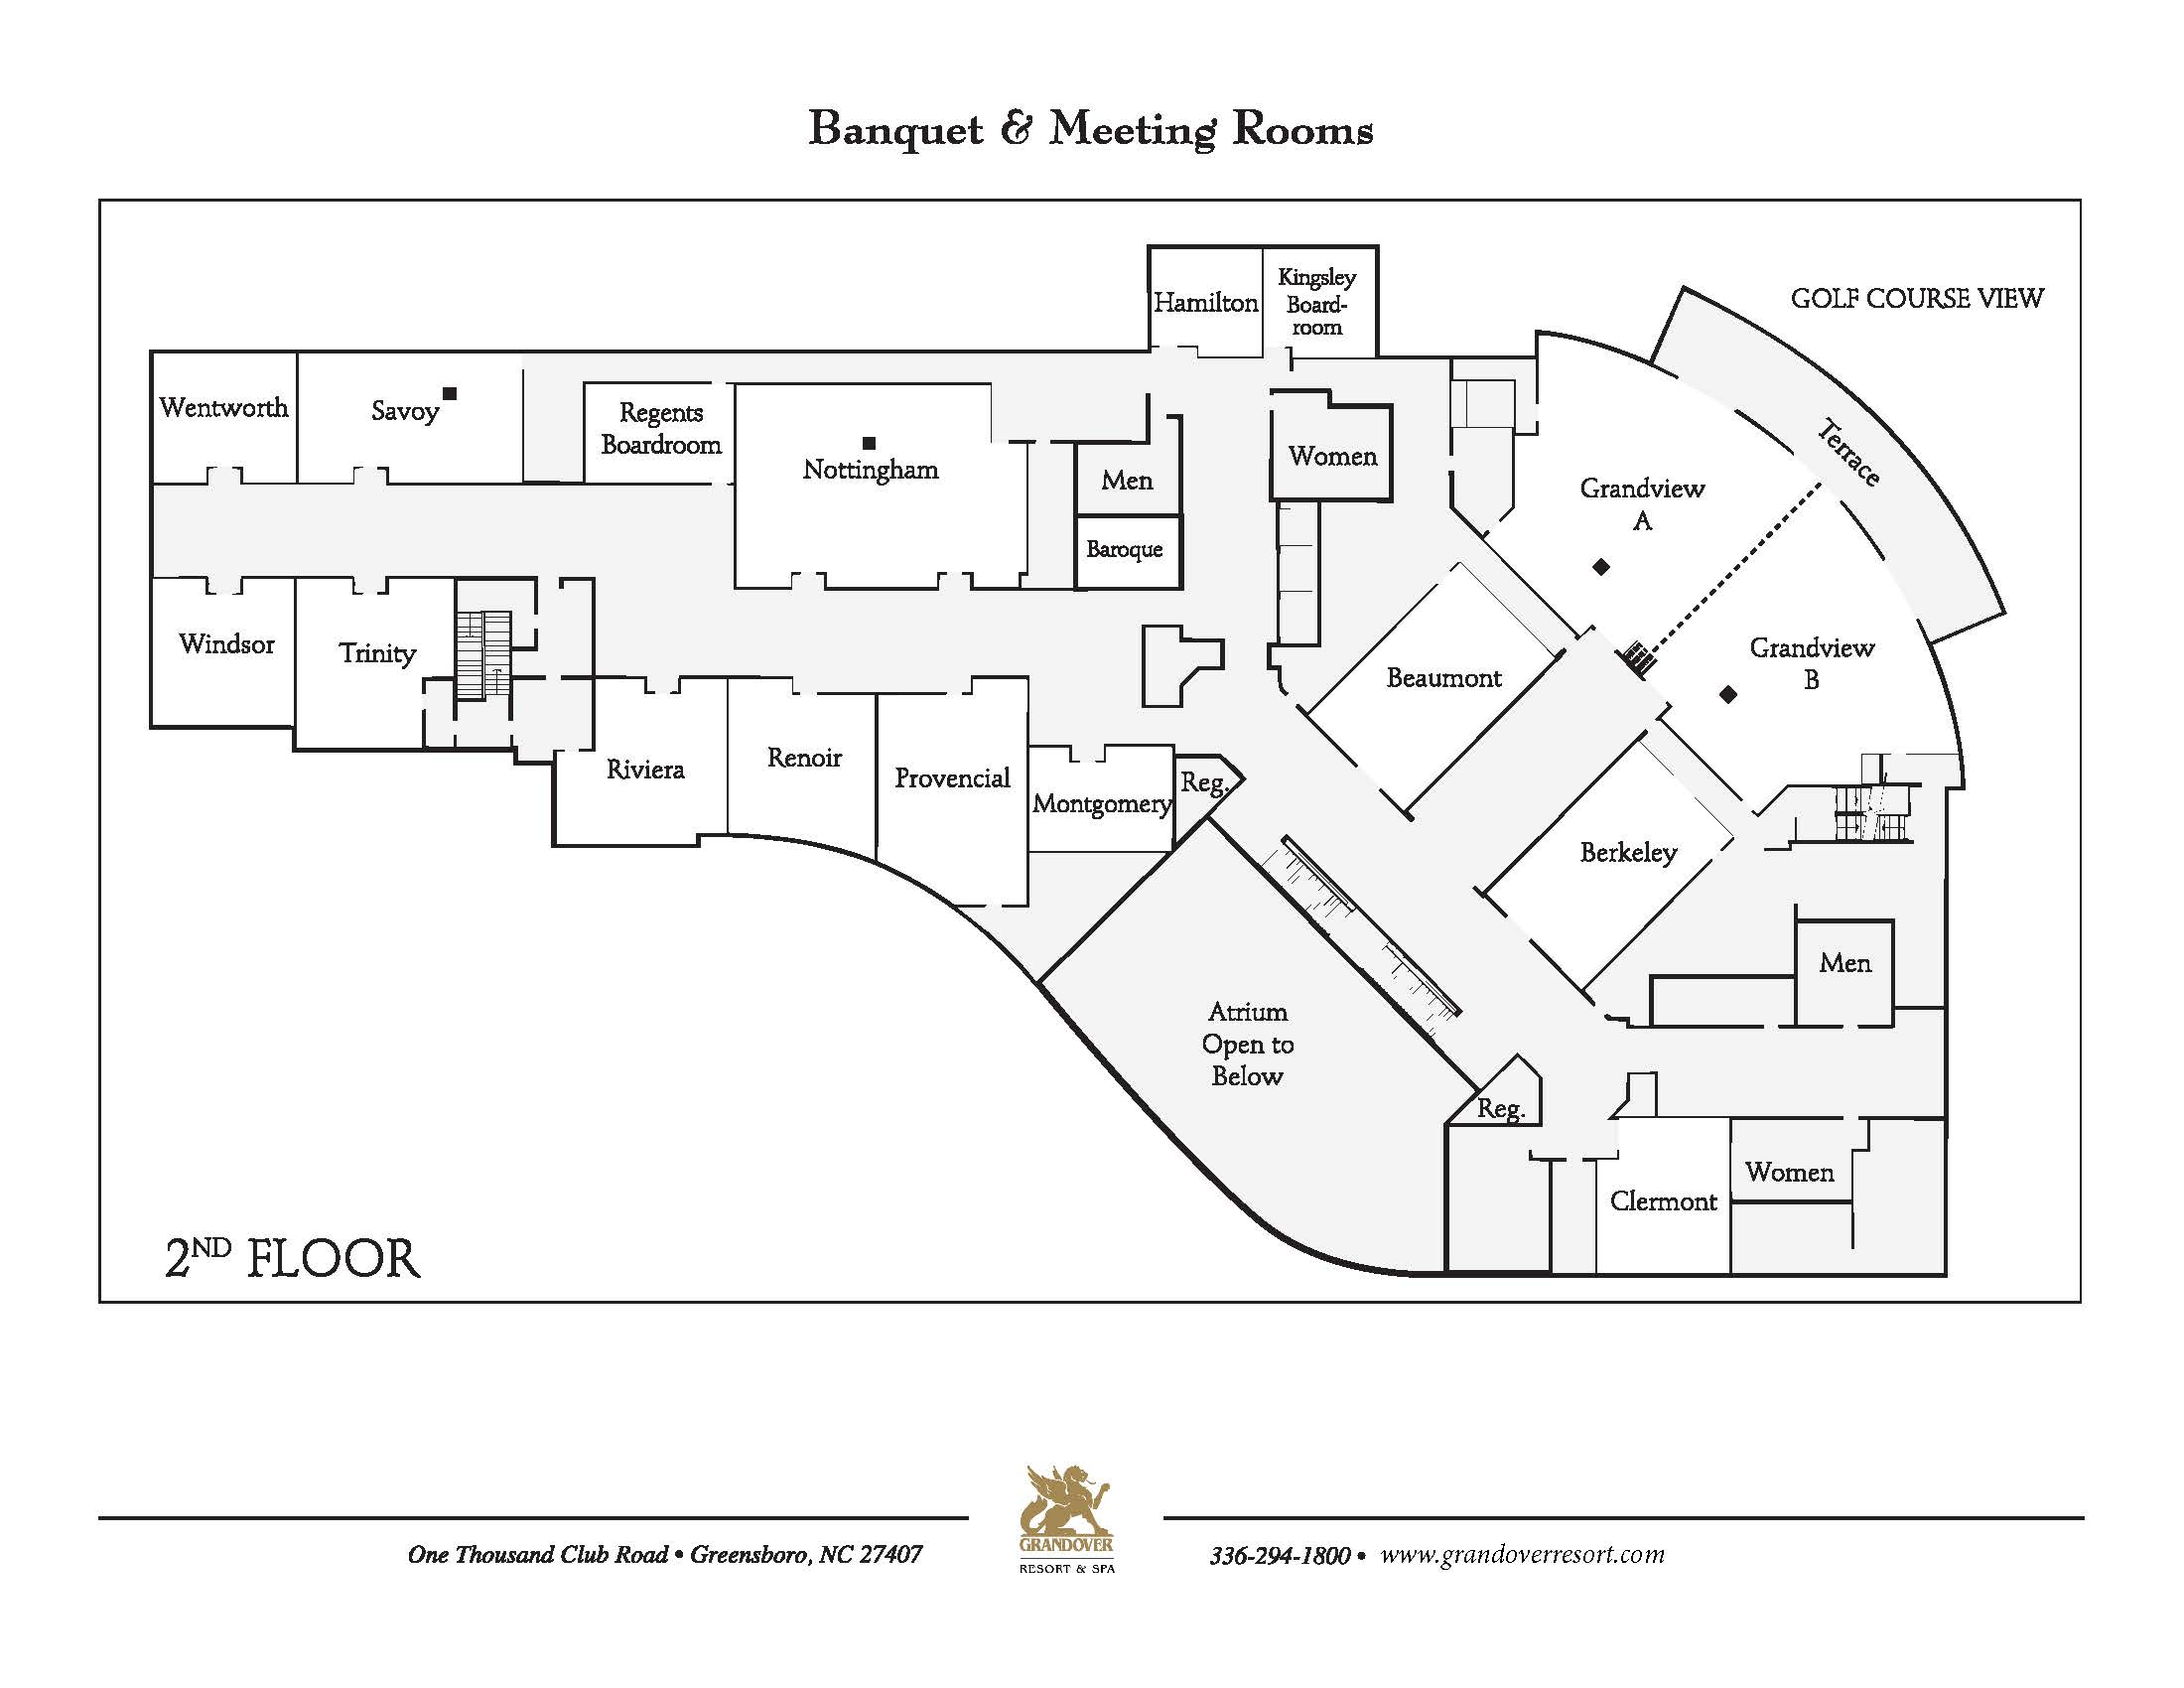 Grandover Second Floor Meeting Spaces Floor Plan